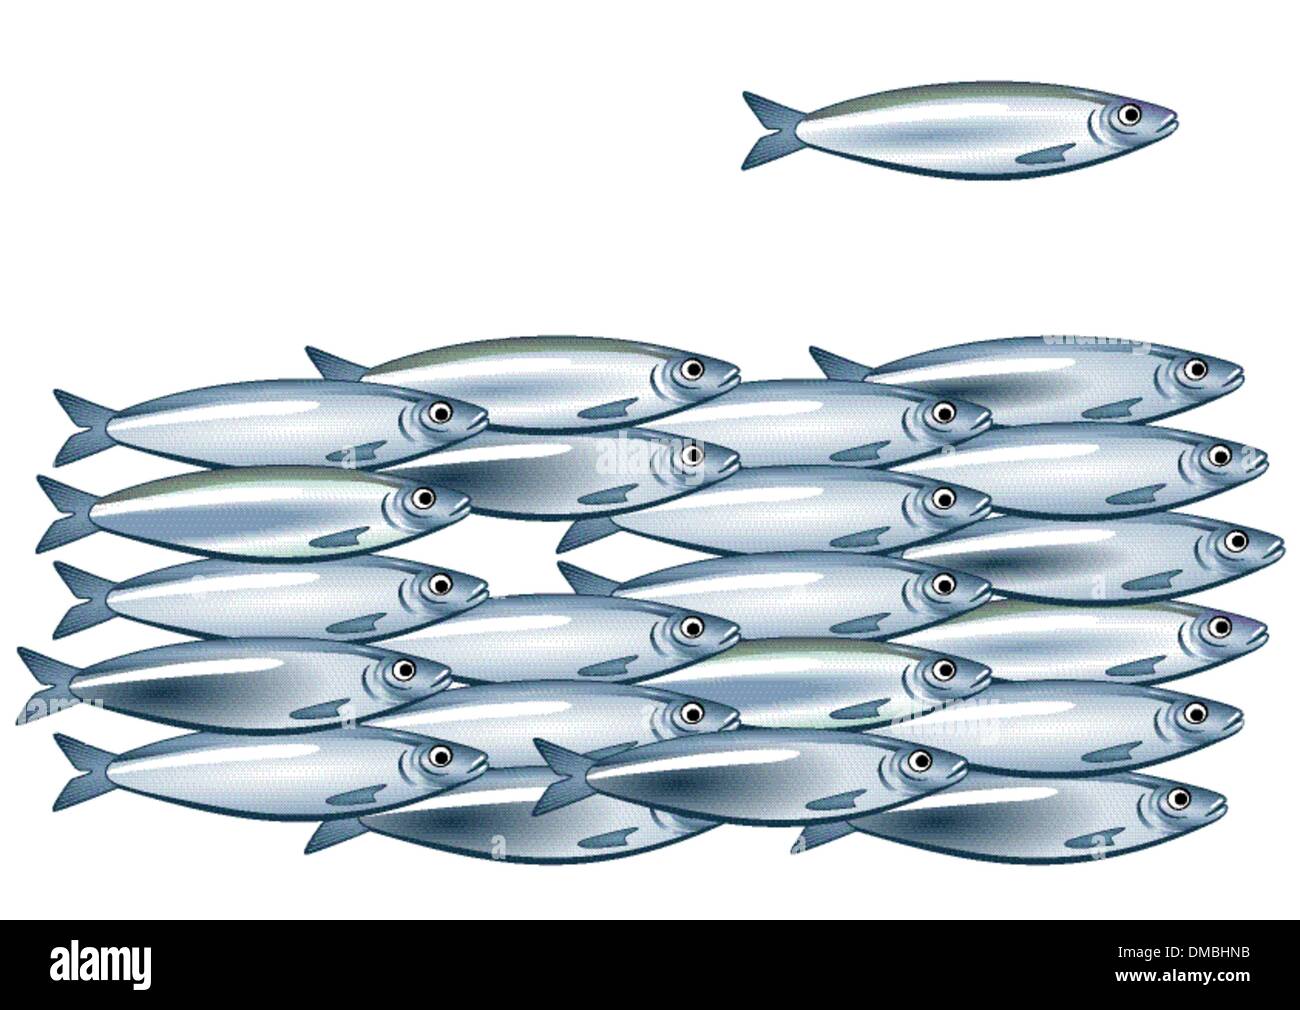 Banc de sardine Illustration de Vecteur